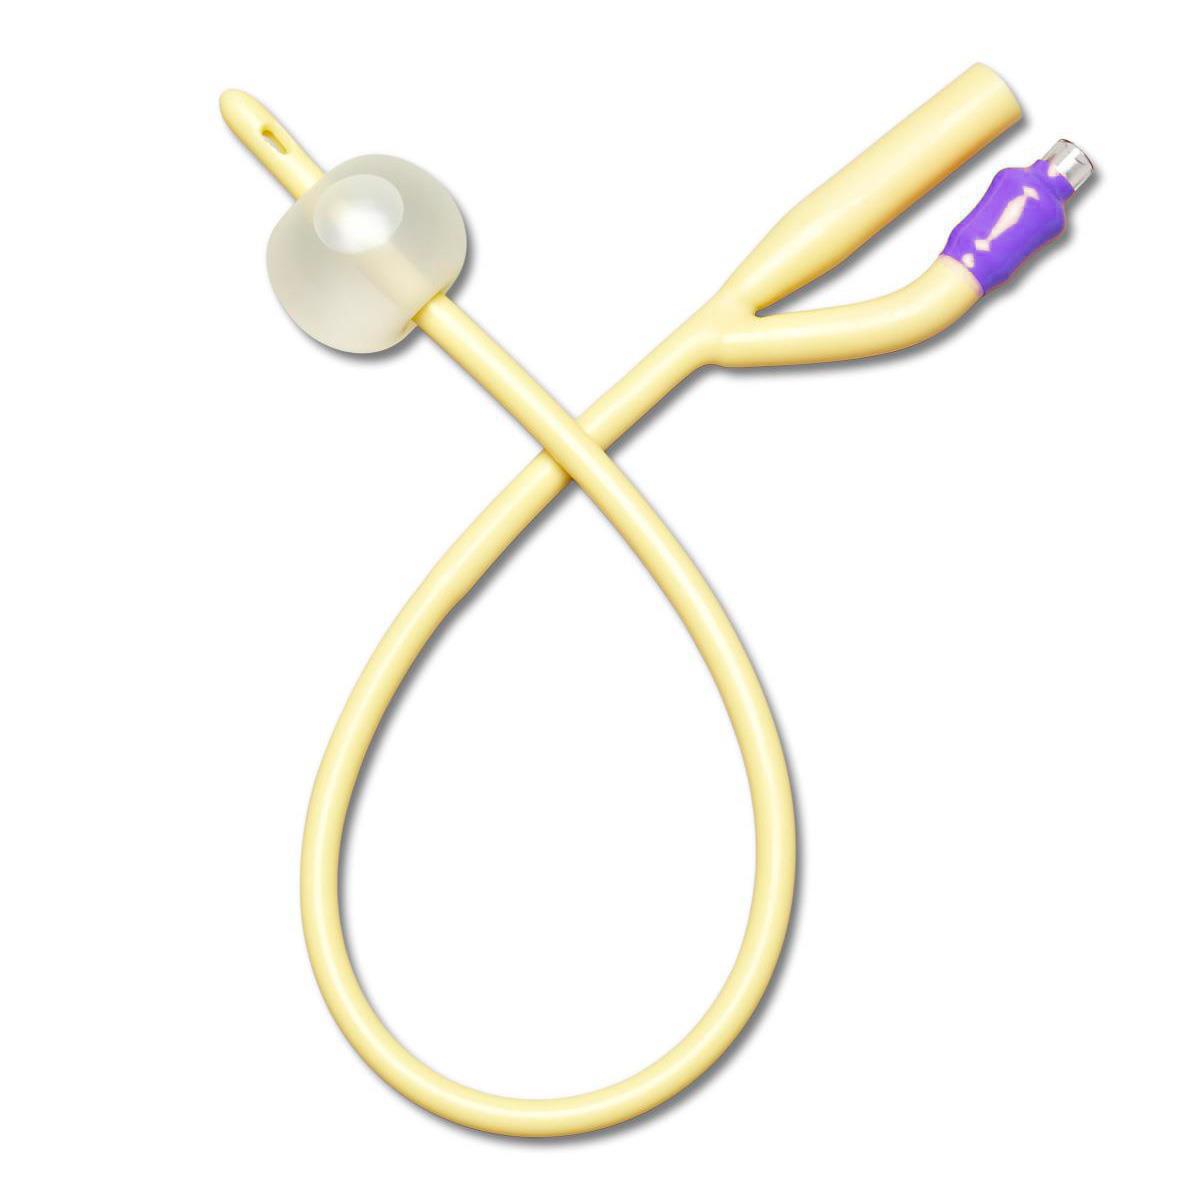 Silicone Elastomer Coated Latex Foley Catheter - Medline - All Sizes